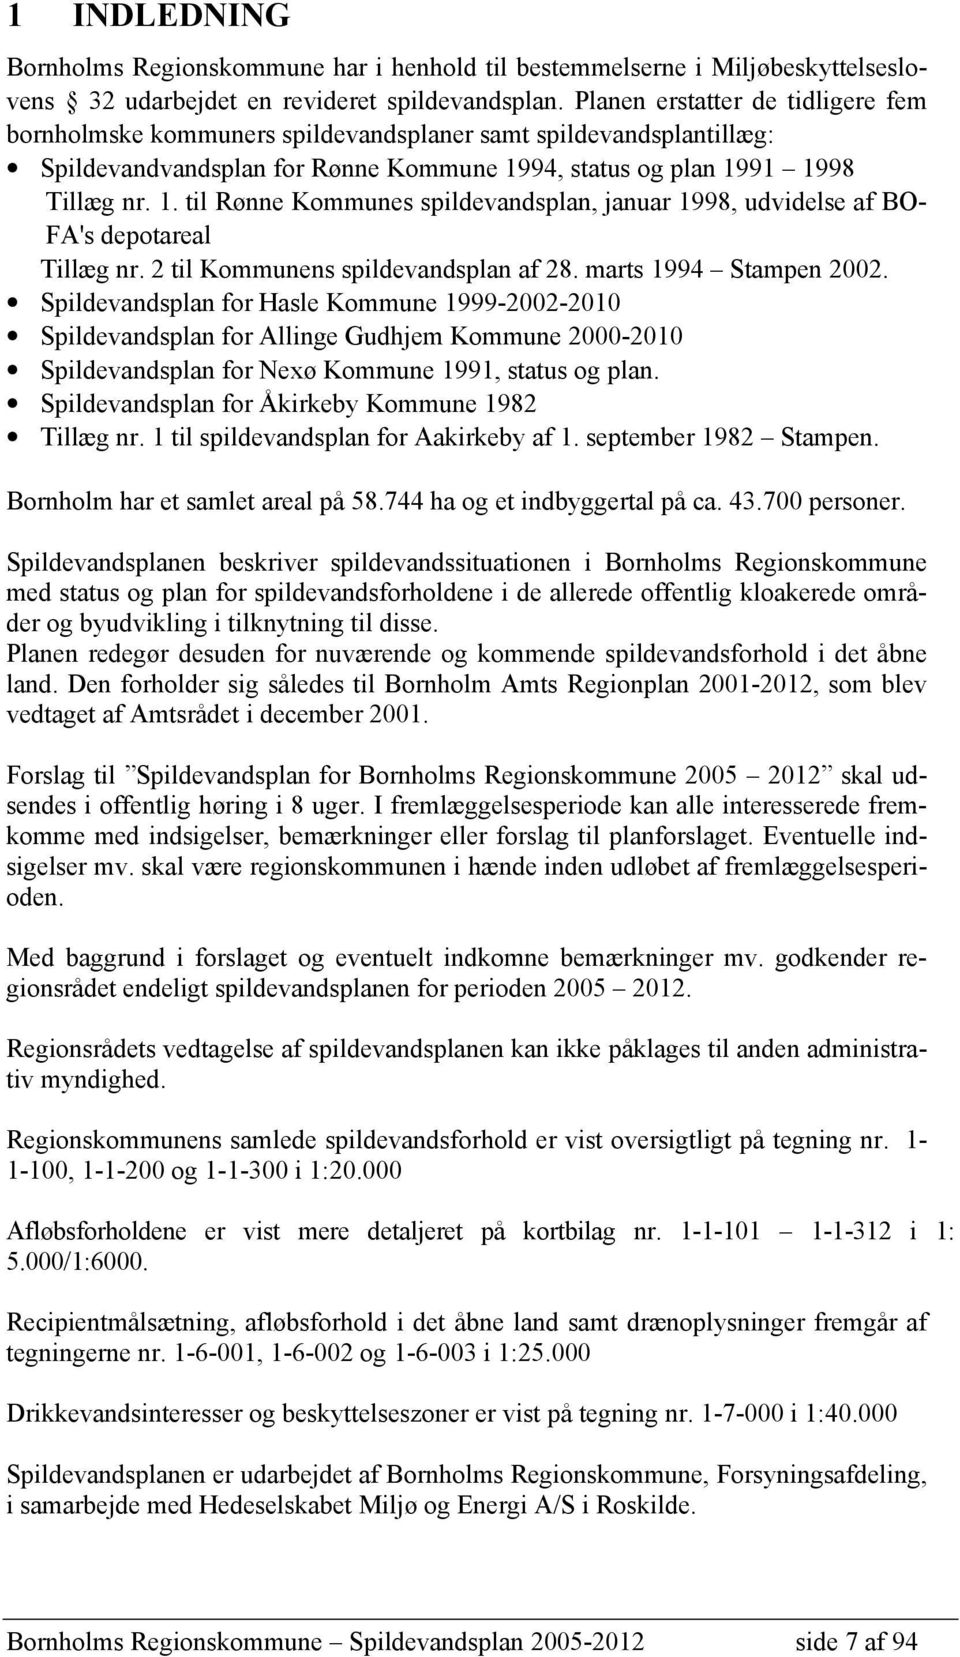 94, status og plan 1991 1998 Tillæg nr. 1. til Rønne Kommunes spildevandsplan, januar 1998, udvidelse af BO- FA's depotareal Tillæg nr. 2 til Kommunens spildevandsplan af 28. marts 1994 Stampen 2002.